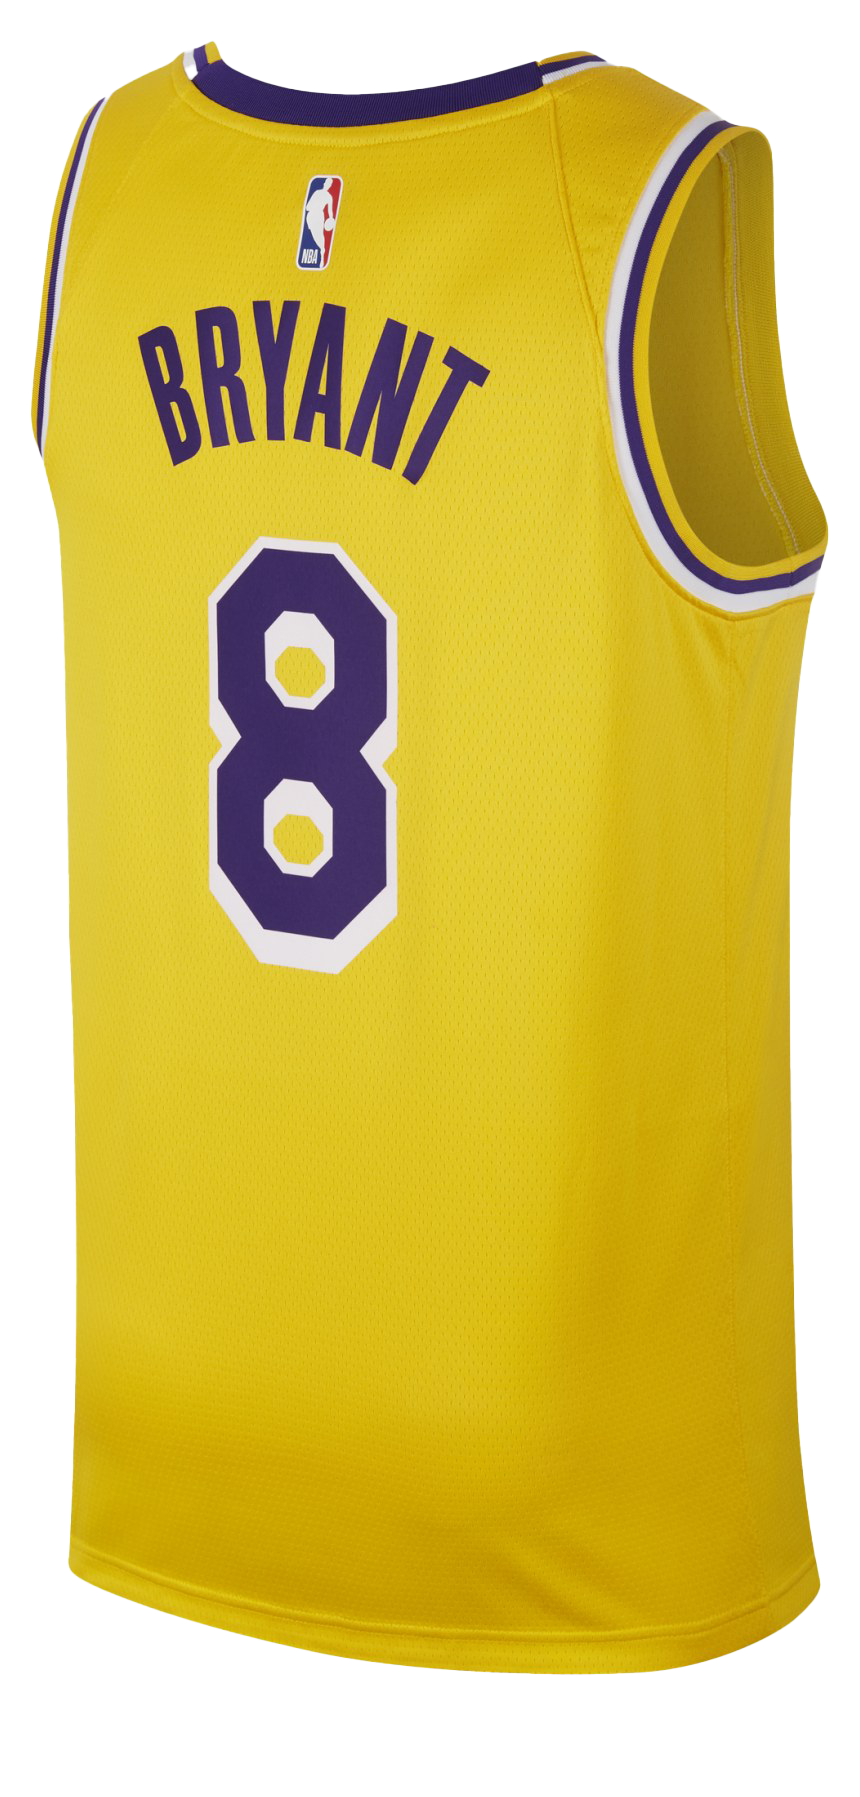 Kobe Bryant - Kobe Bryant Jersey Transparent PNG - 1000x697 - Free Download  on NicePNG